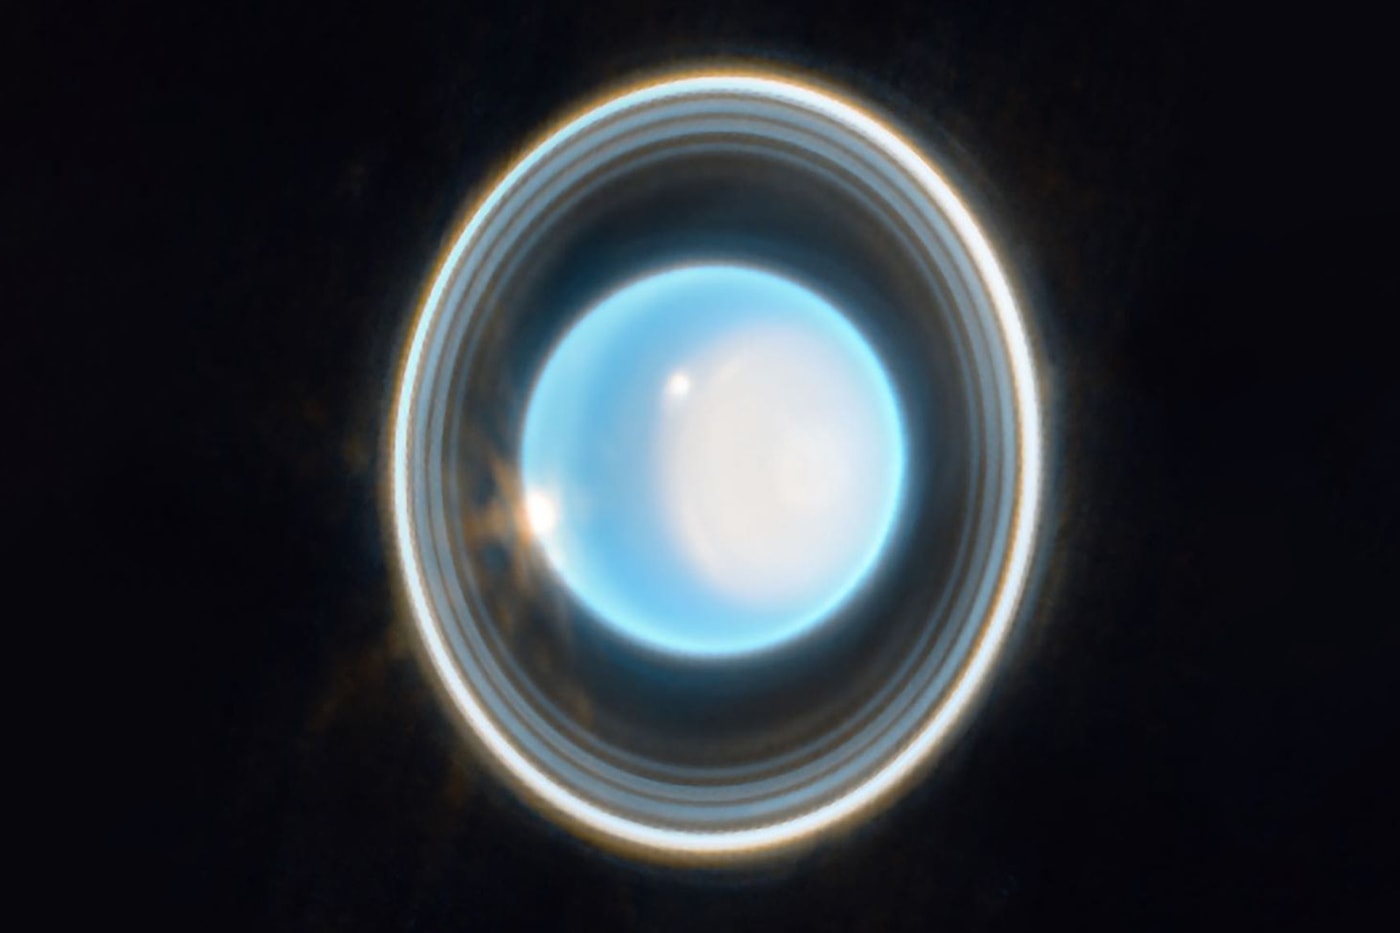 ジェームス・ウェッブ宇宙望遠鏡の捉えた天王星の新たな画像が公開 NASA James Webb Space Telescope Captures Detailed Image of Uranus rings photos ice giant planet info